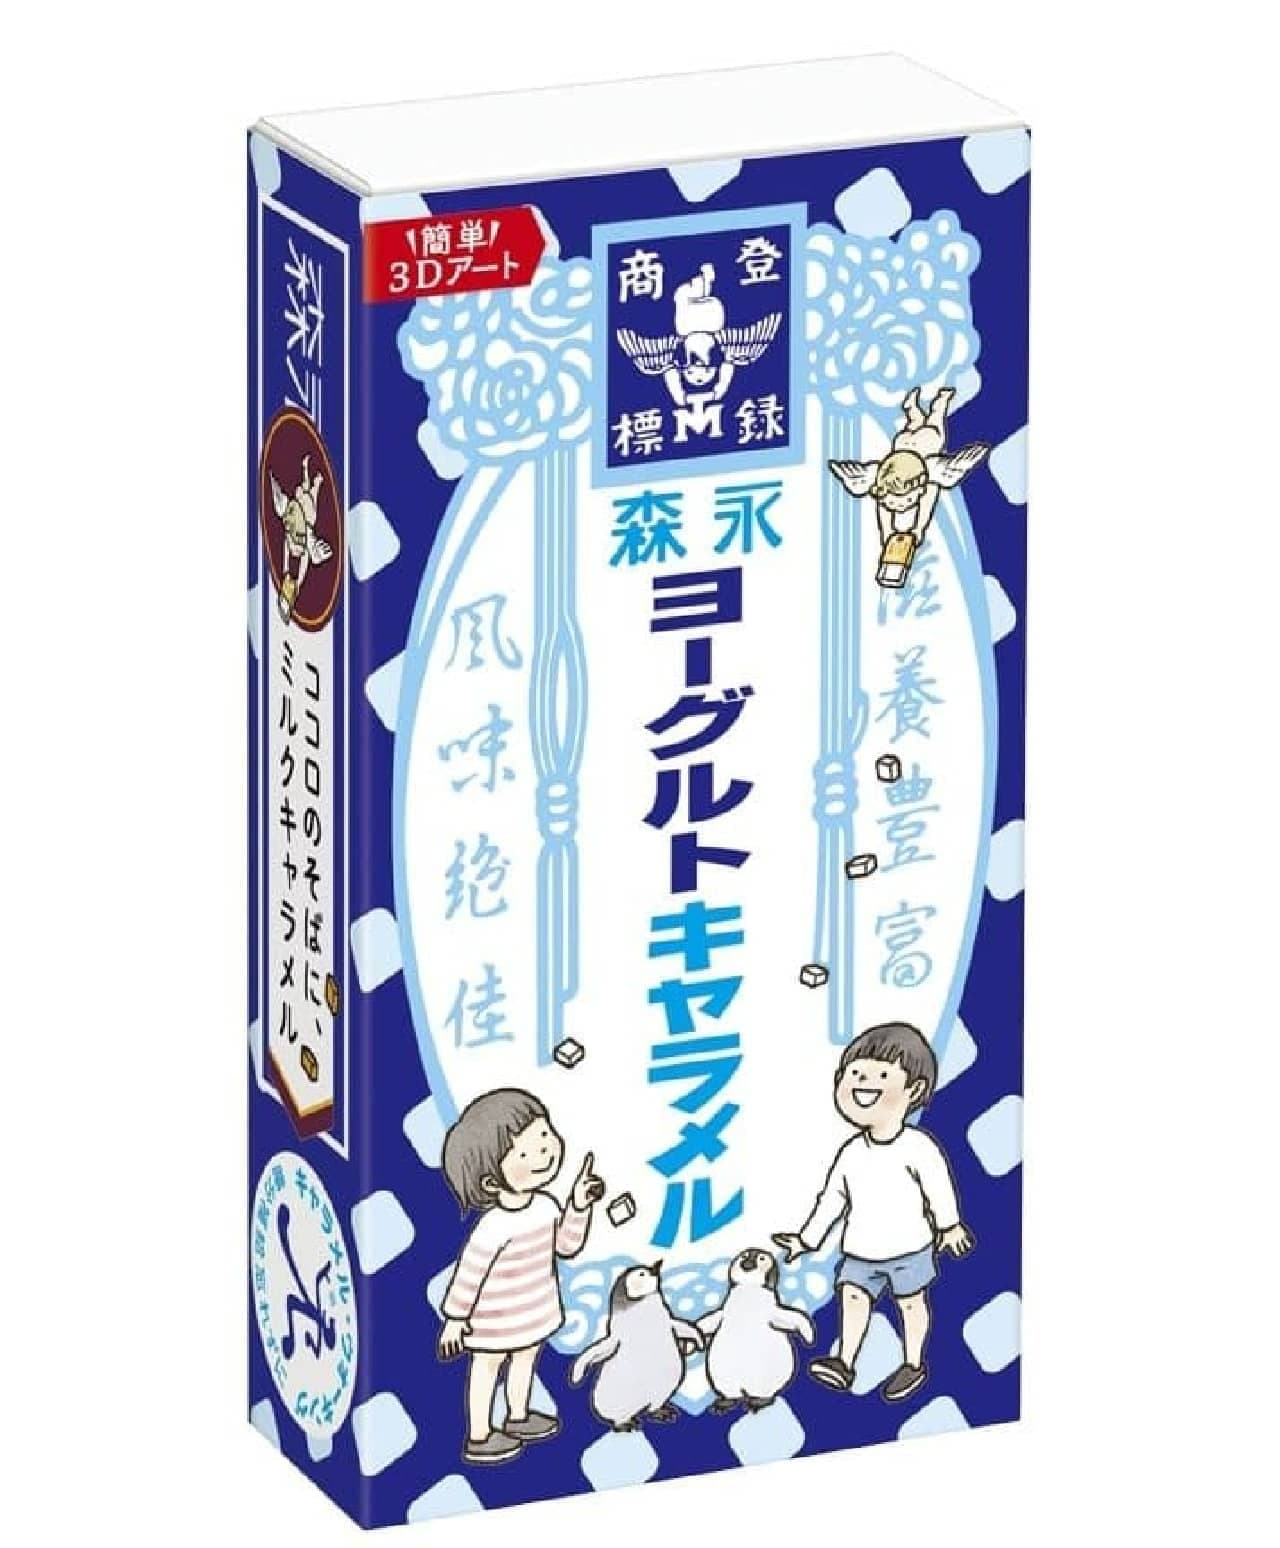 Morinaga Seika "Yogurt Caramel